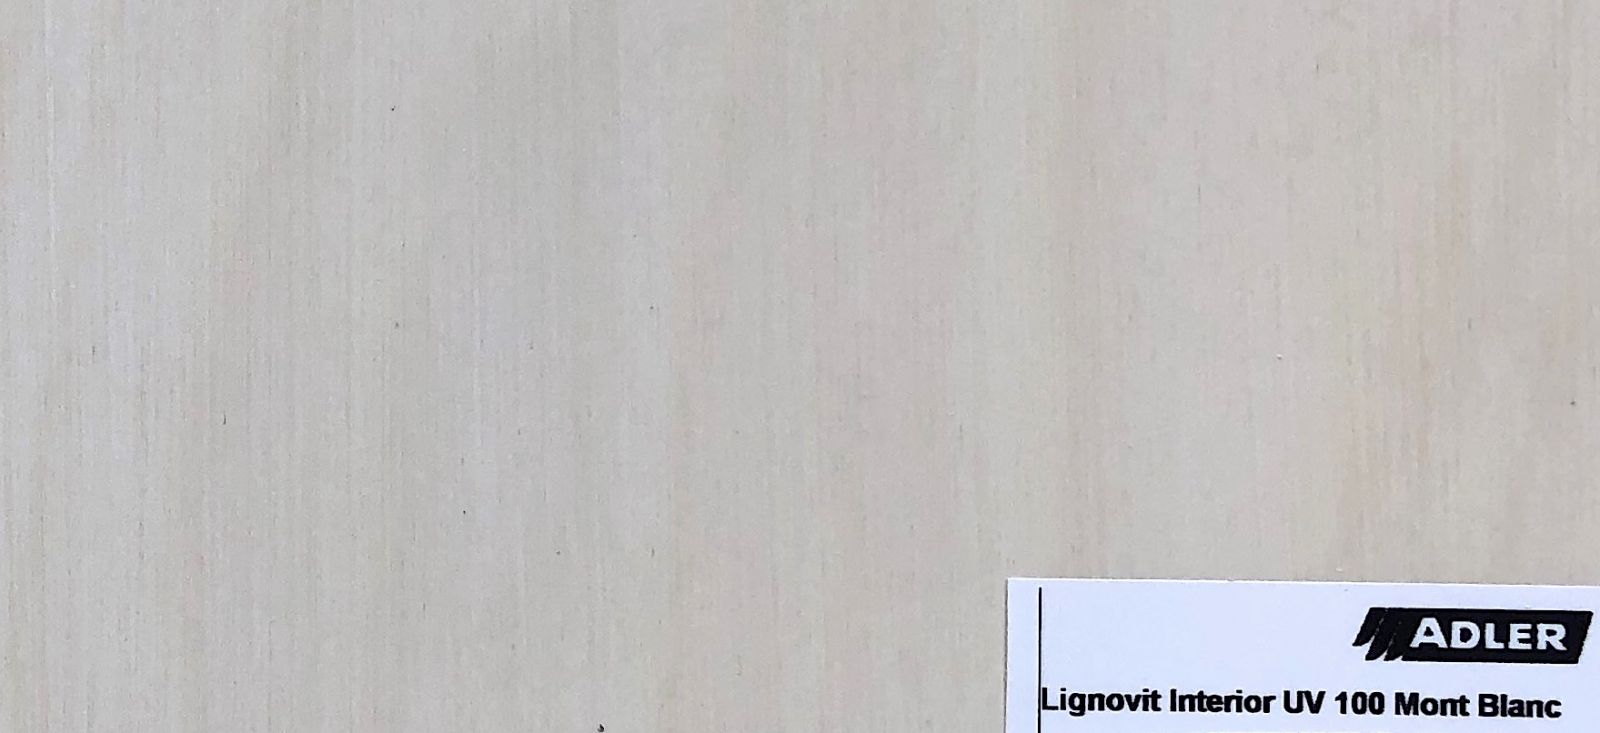 Lazúra Lignovit UV 100 Mont Blanc natretá na brezovú preglejku do interiéru. Vďaka přibělenému odtieňa vydrží dlhšie odolávať žltnutie.